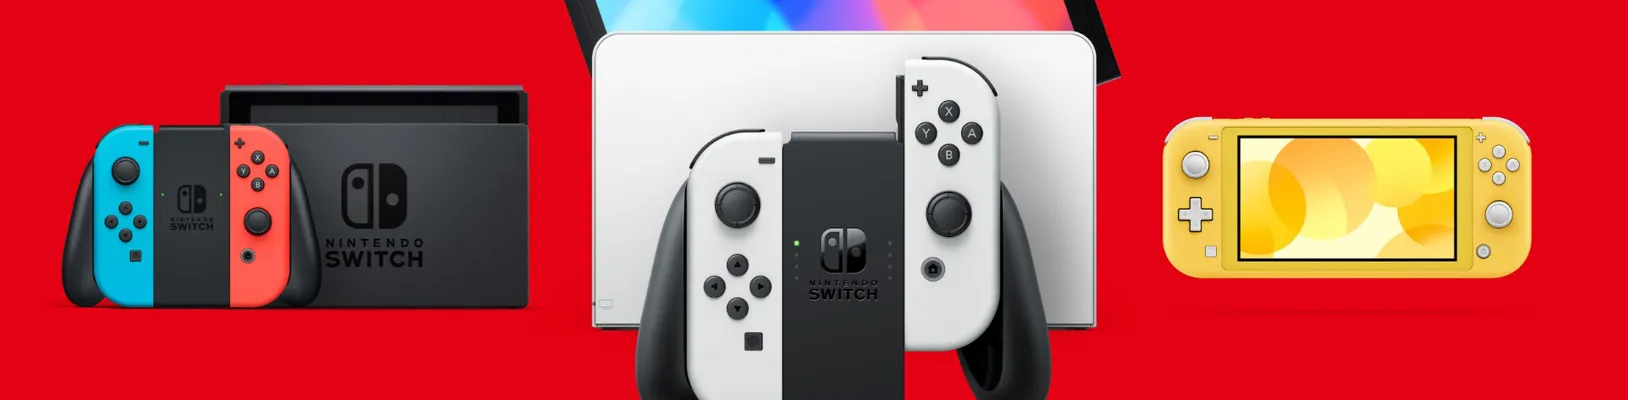 Prodeje konzolí Nintendo Switch nadále klesají